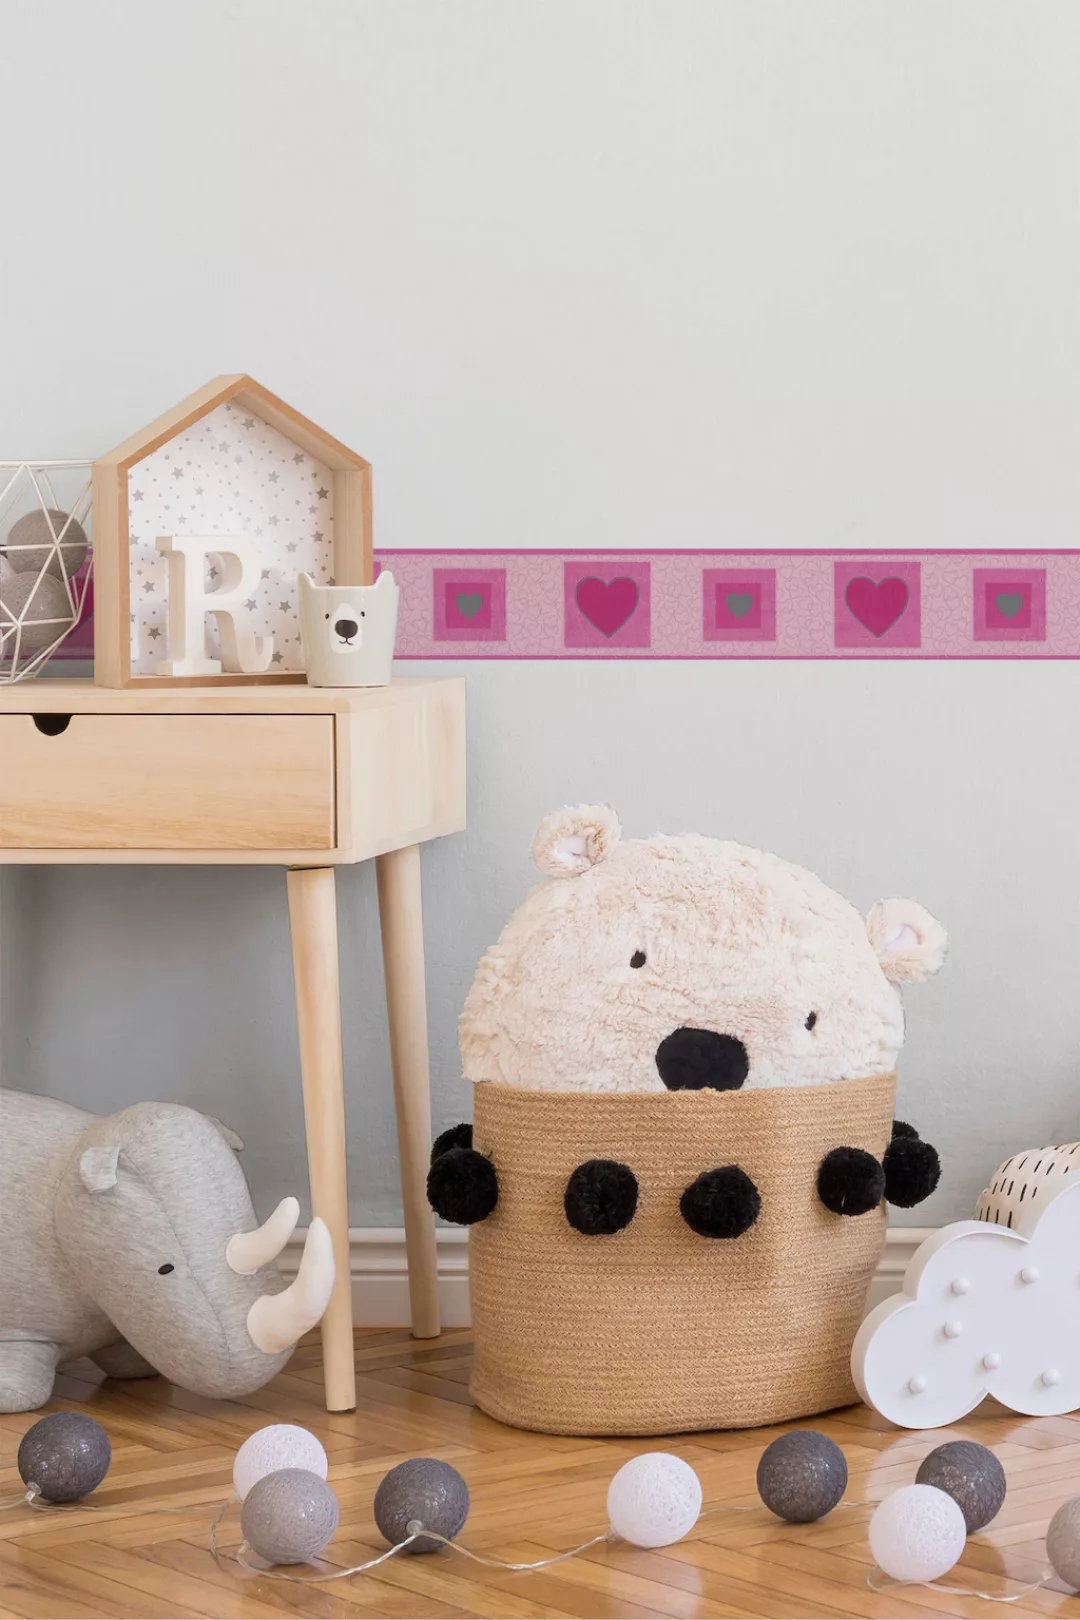 Bricoflor Pinke Bordüre mit Herz Muster Mädchenzimmer Tapetenbordüre aus  P günstig online kaufen